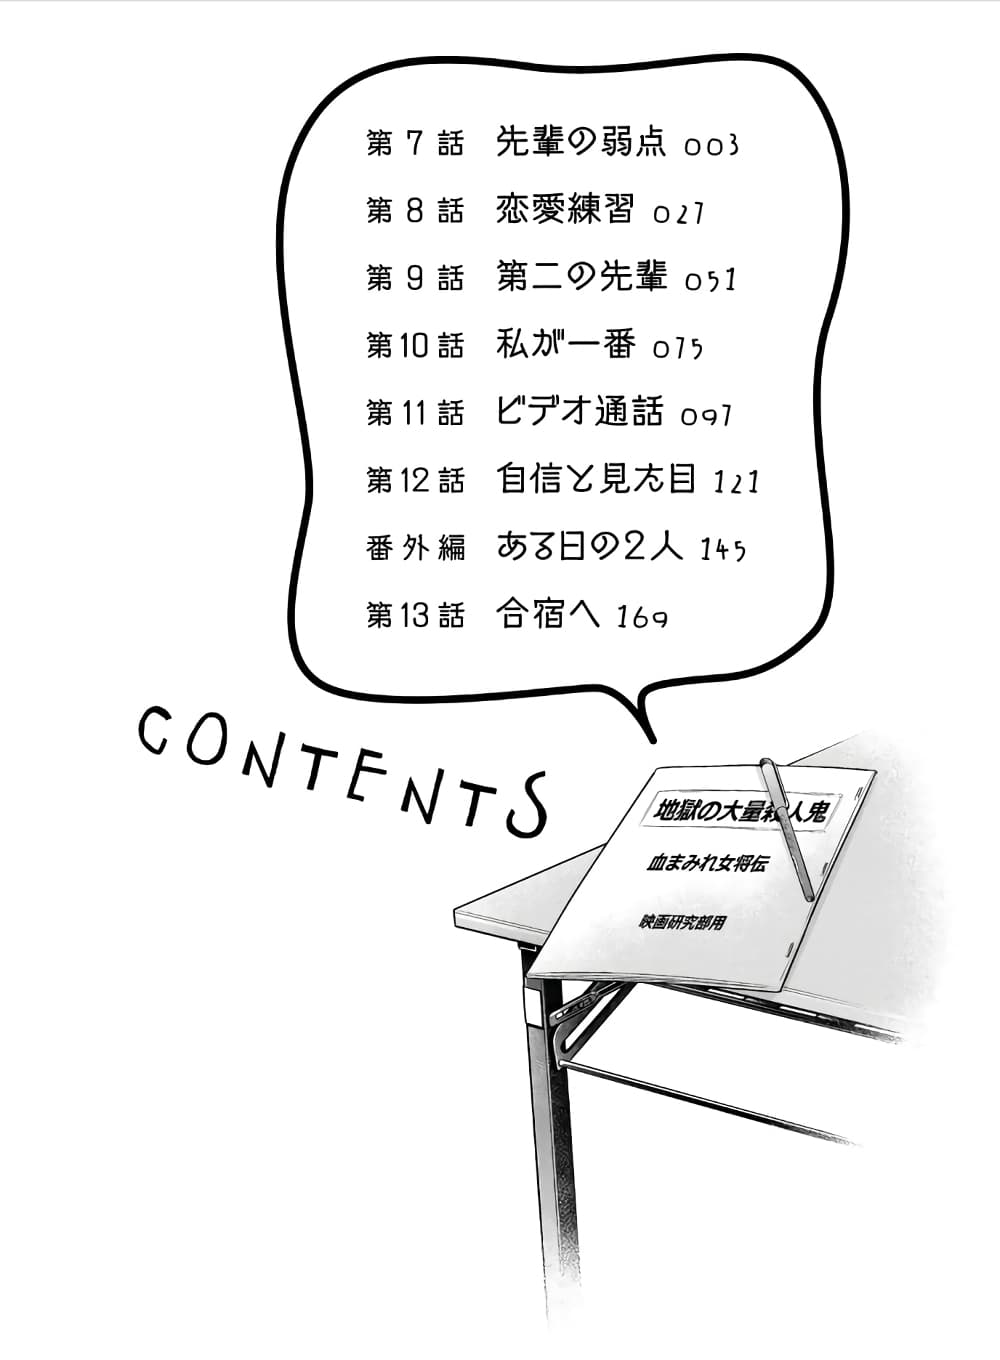 Toshishita no Senpai - หน้า 3